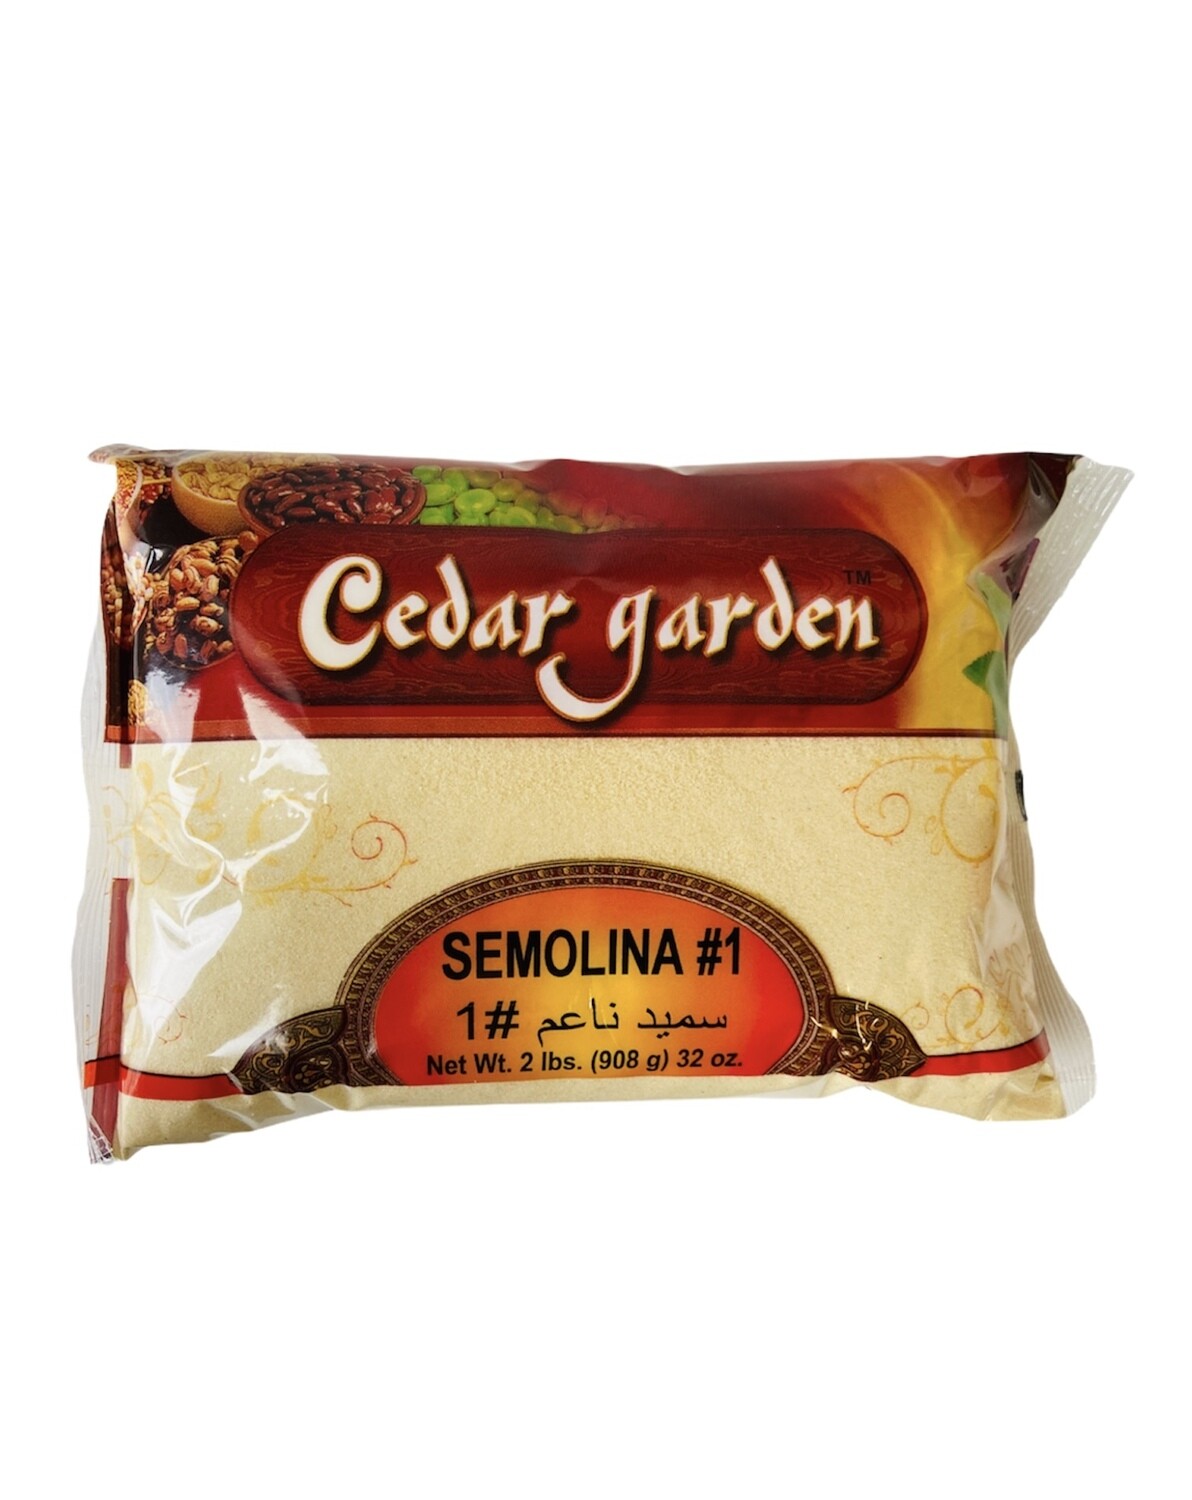 Cedar Garden Semolina #1 12x2lb